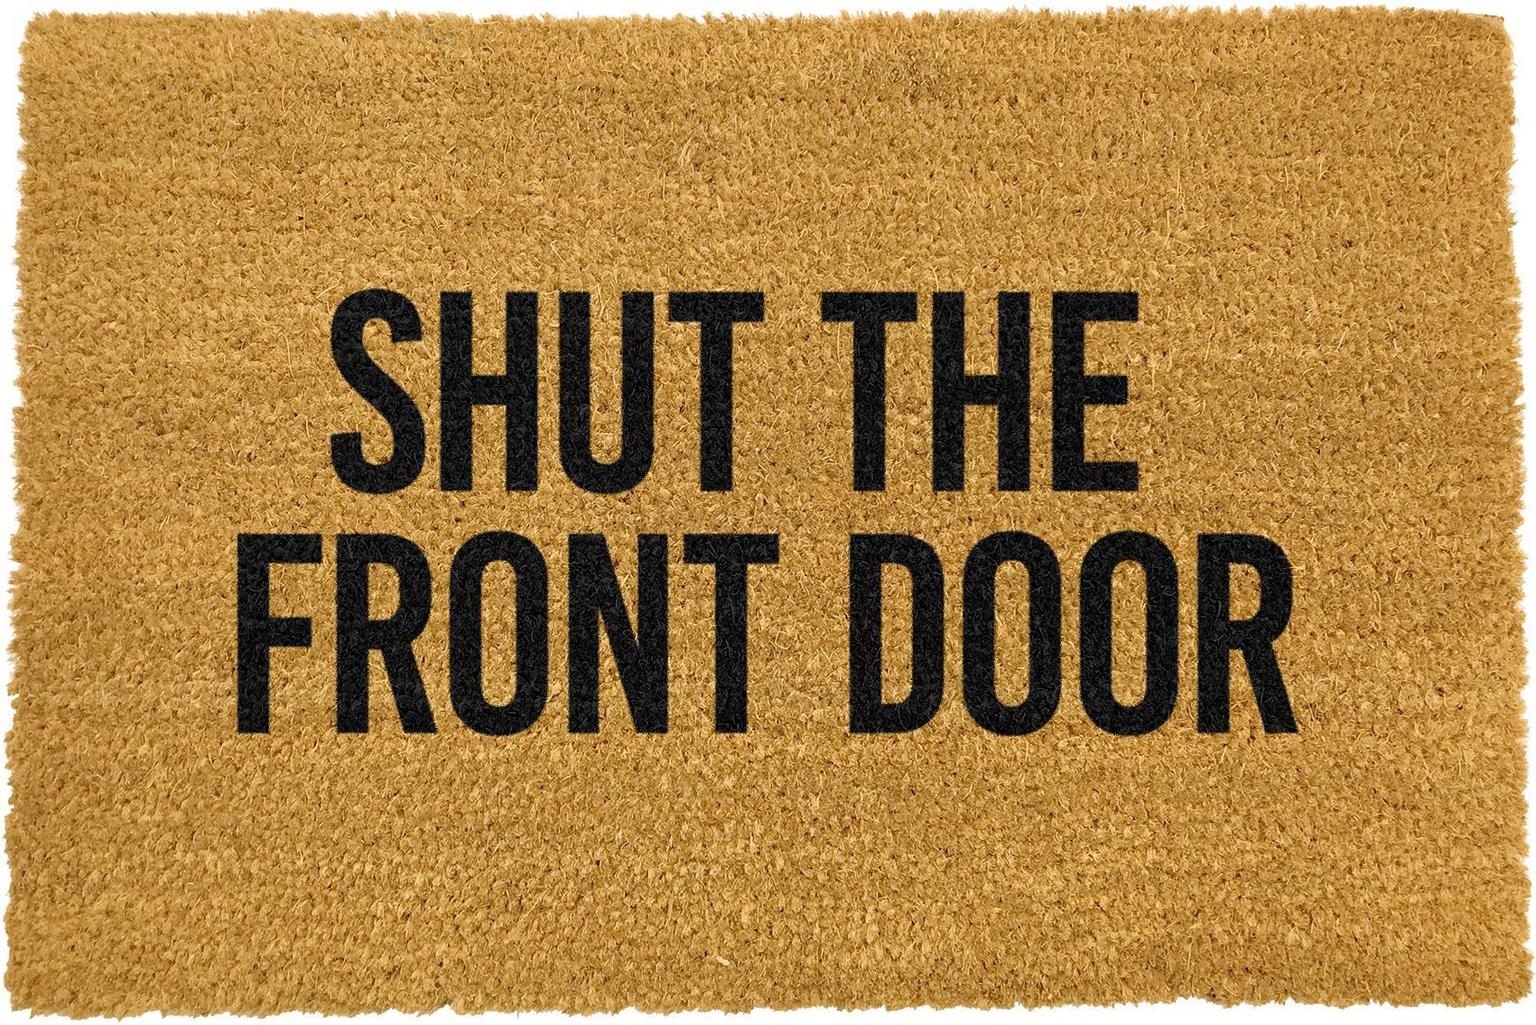 Artsy Mats Shut the front door Doormat 60 x 40 CM 9501594748985